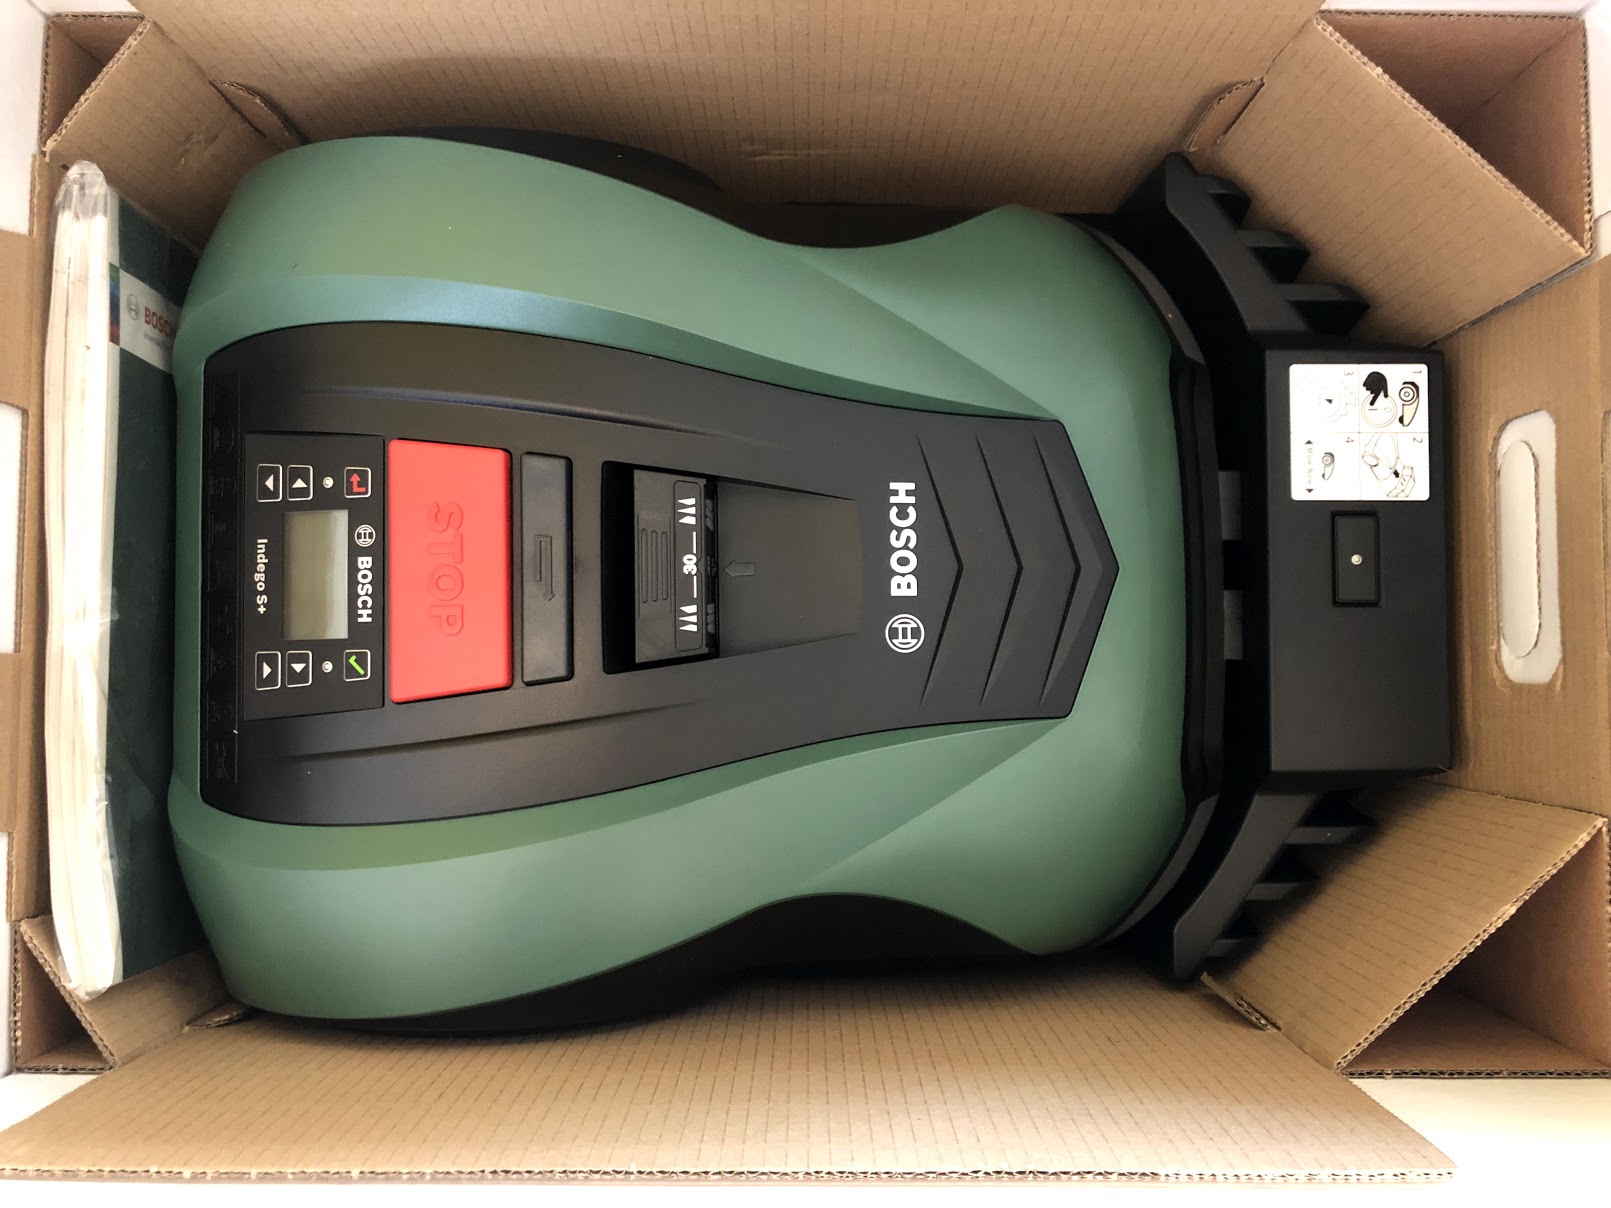 Test af Bosch Indego 400 connect s+ s+400 erfaring test anmeldelse review garage virker god robotplæneklipper støjniveau lydniveau